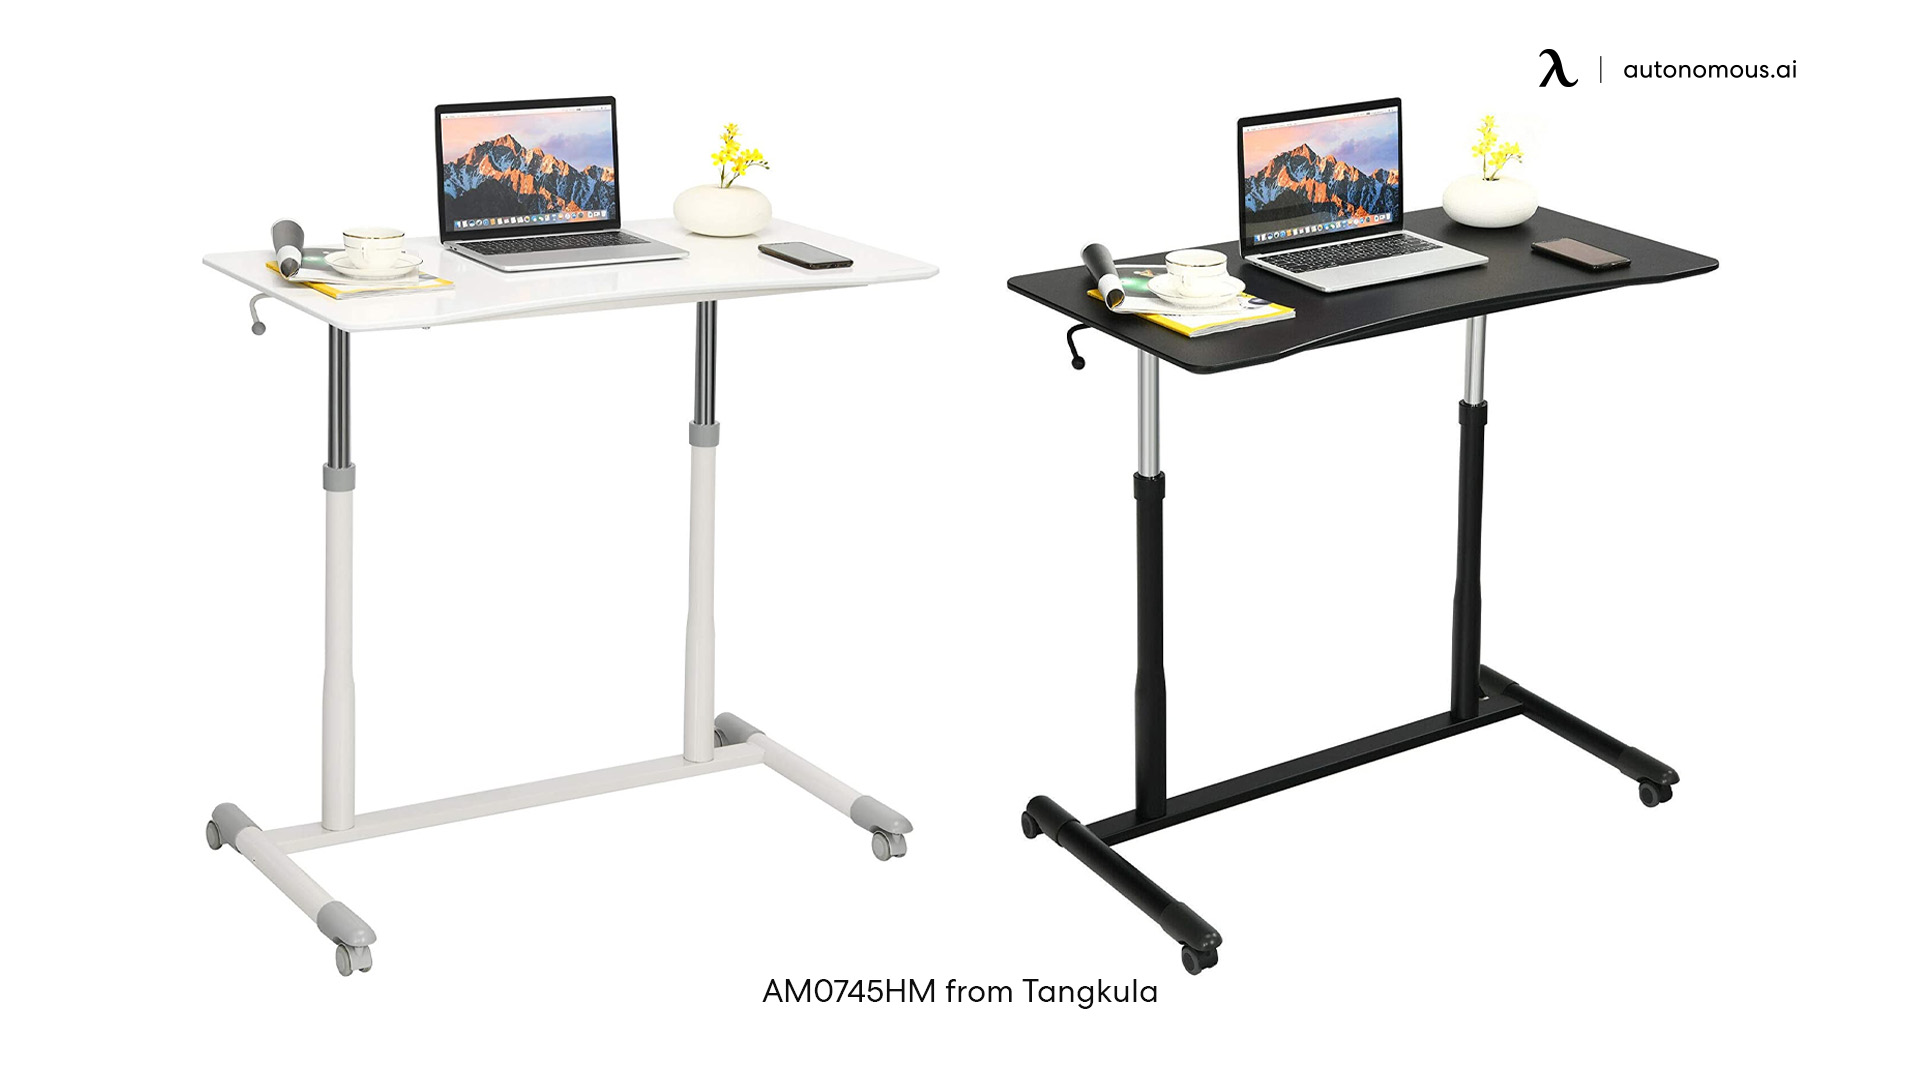 Tangkula compact writing desk